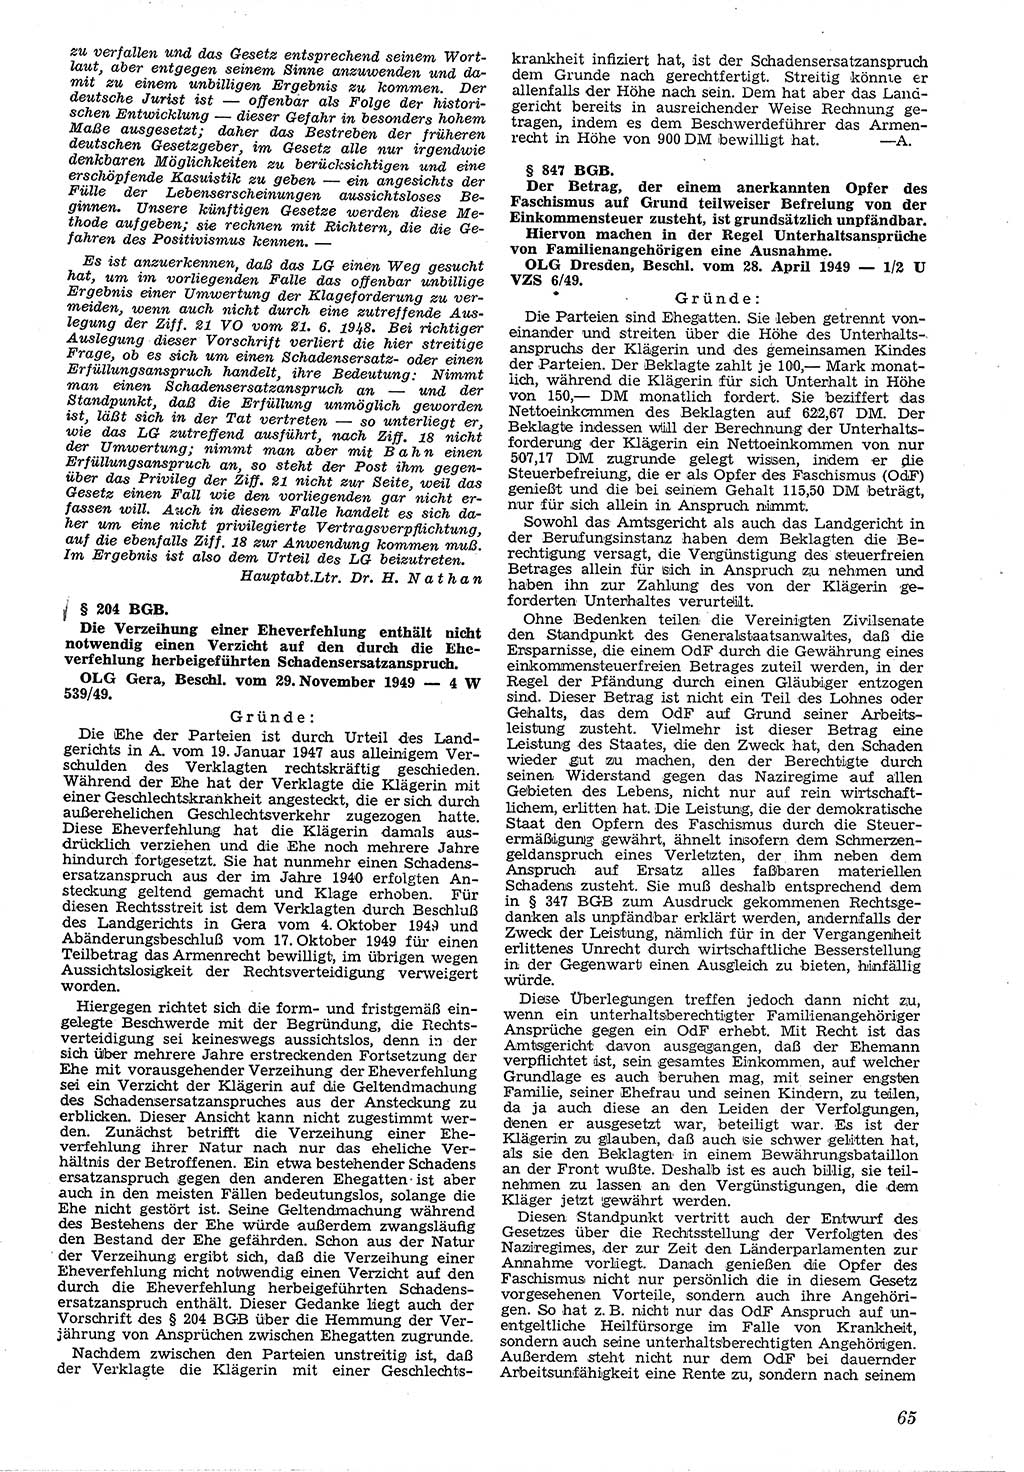 Neue Justiz (NJ), Zeitschrift für Recht und Rechtswissenschaft [Deutsche Demokratische Republik (DDR)], 4. Jahrgang 1950, Seite 65 (NJ DDR 1950, S. 65)